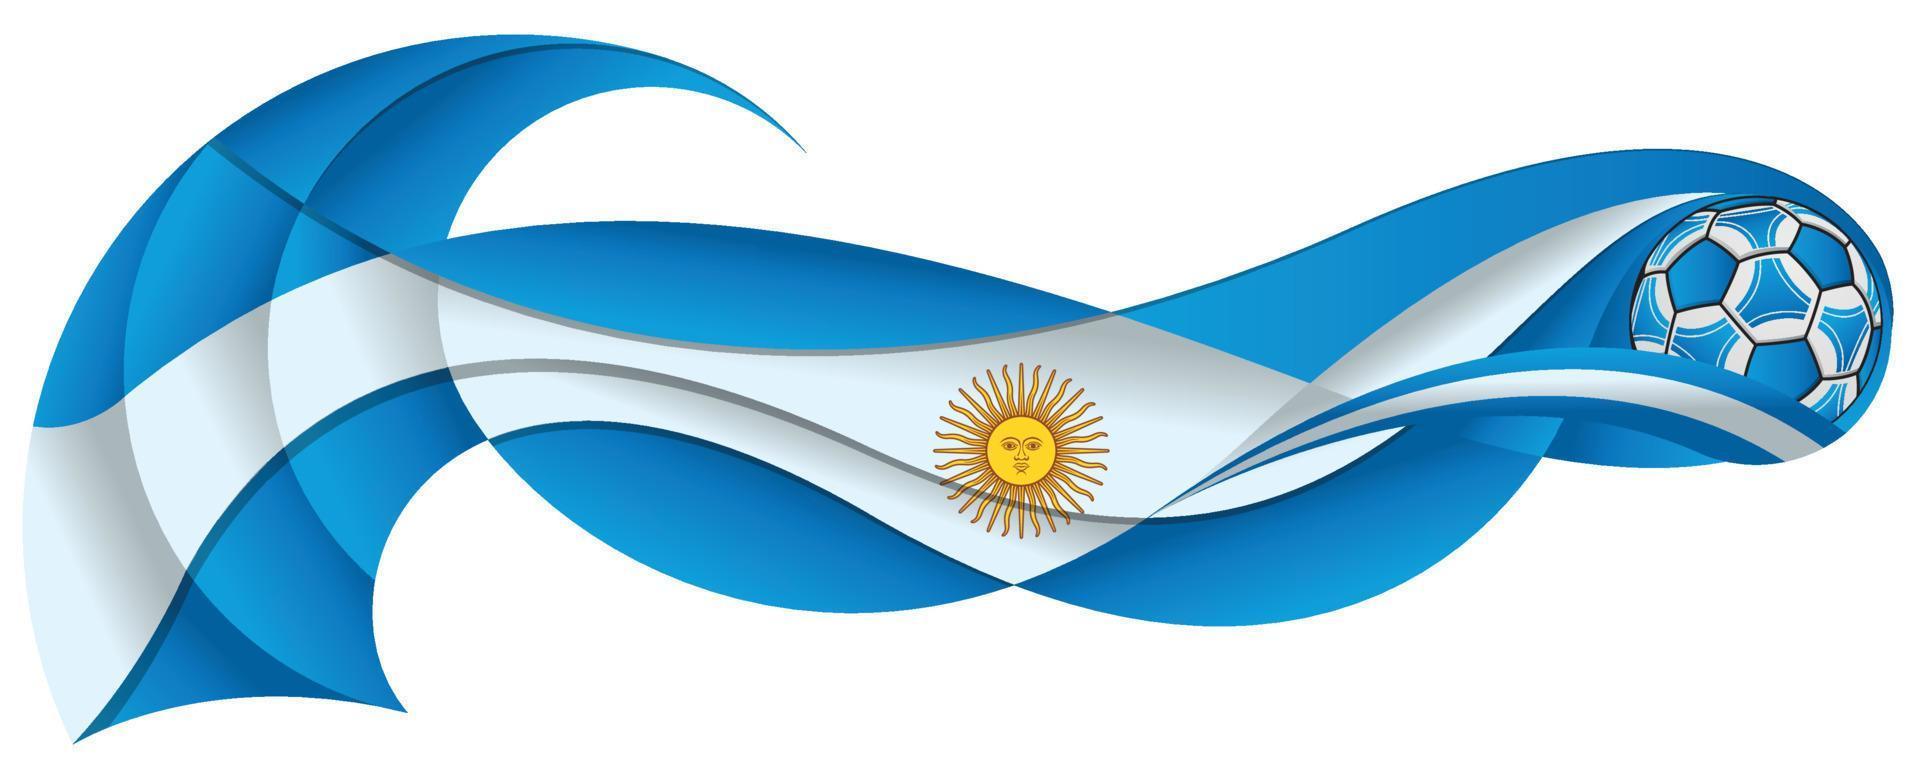 bola de futebol azul e branca clara deixando um rastro ondulado com as cores da bandeira argentina vetor